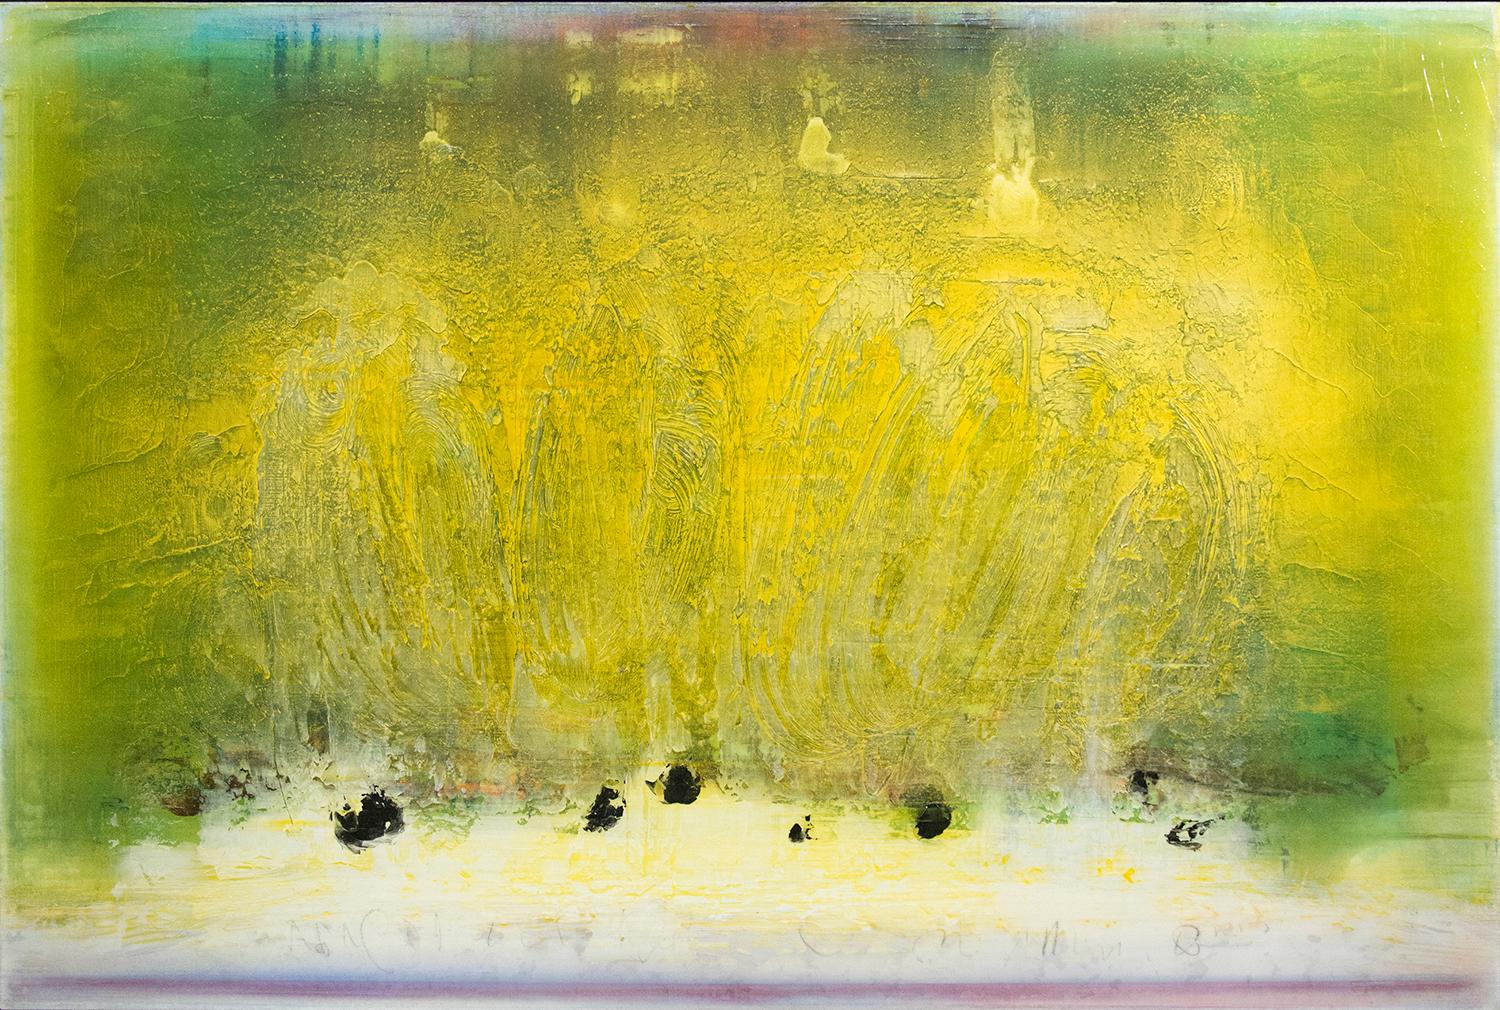 Abstract Painting Alice Teichert - Œuvres d'été - chaudes, brillantes, jaunes, abstraites gestuelles, acrylique sur toile